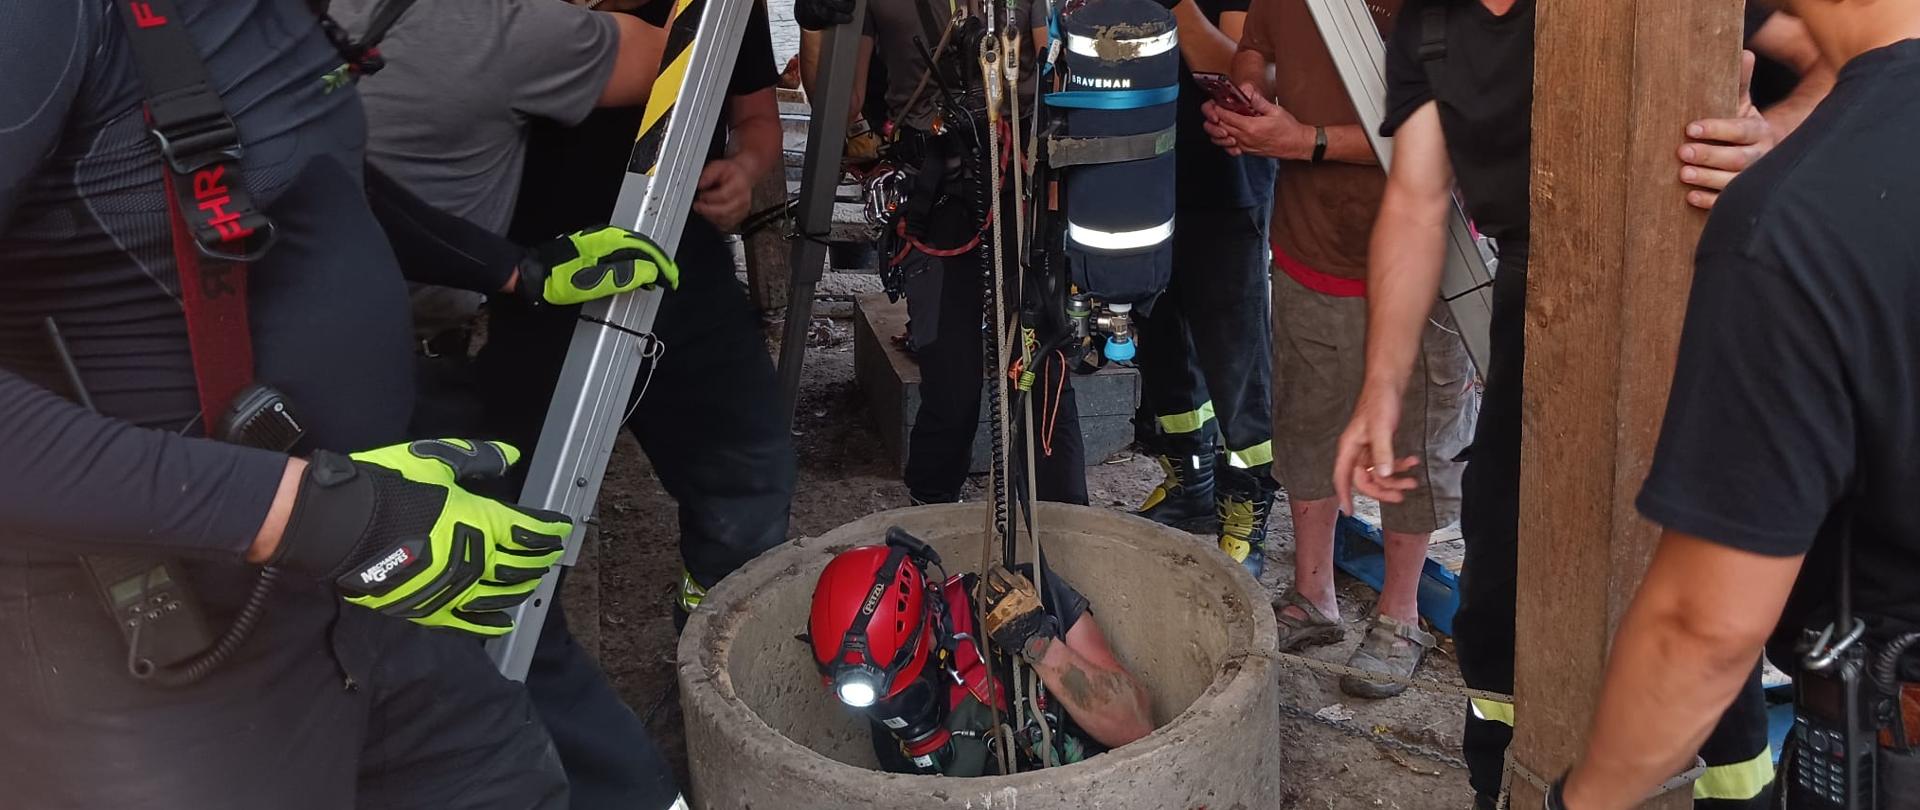 Widok z boku. Na pierwszym planie strażacy, którzy przy życiu trójnogu ratowniczego rozstawionego nad studnią opuszczają ratownika w głąb studni.